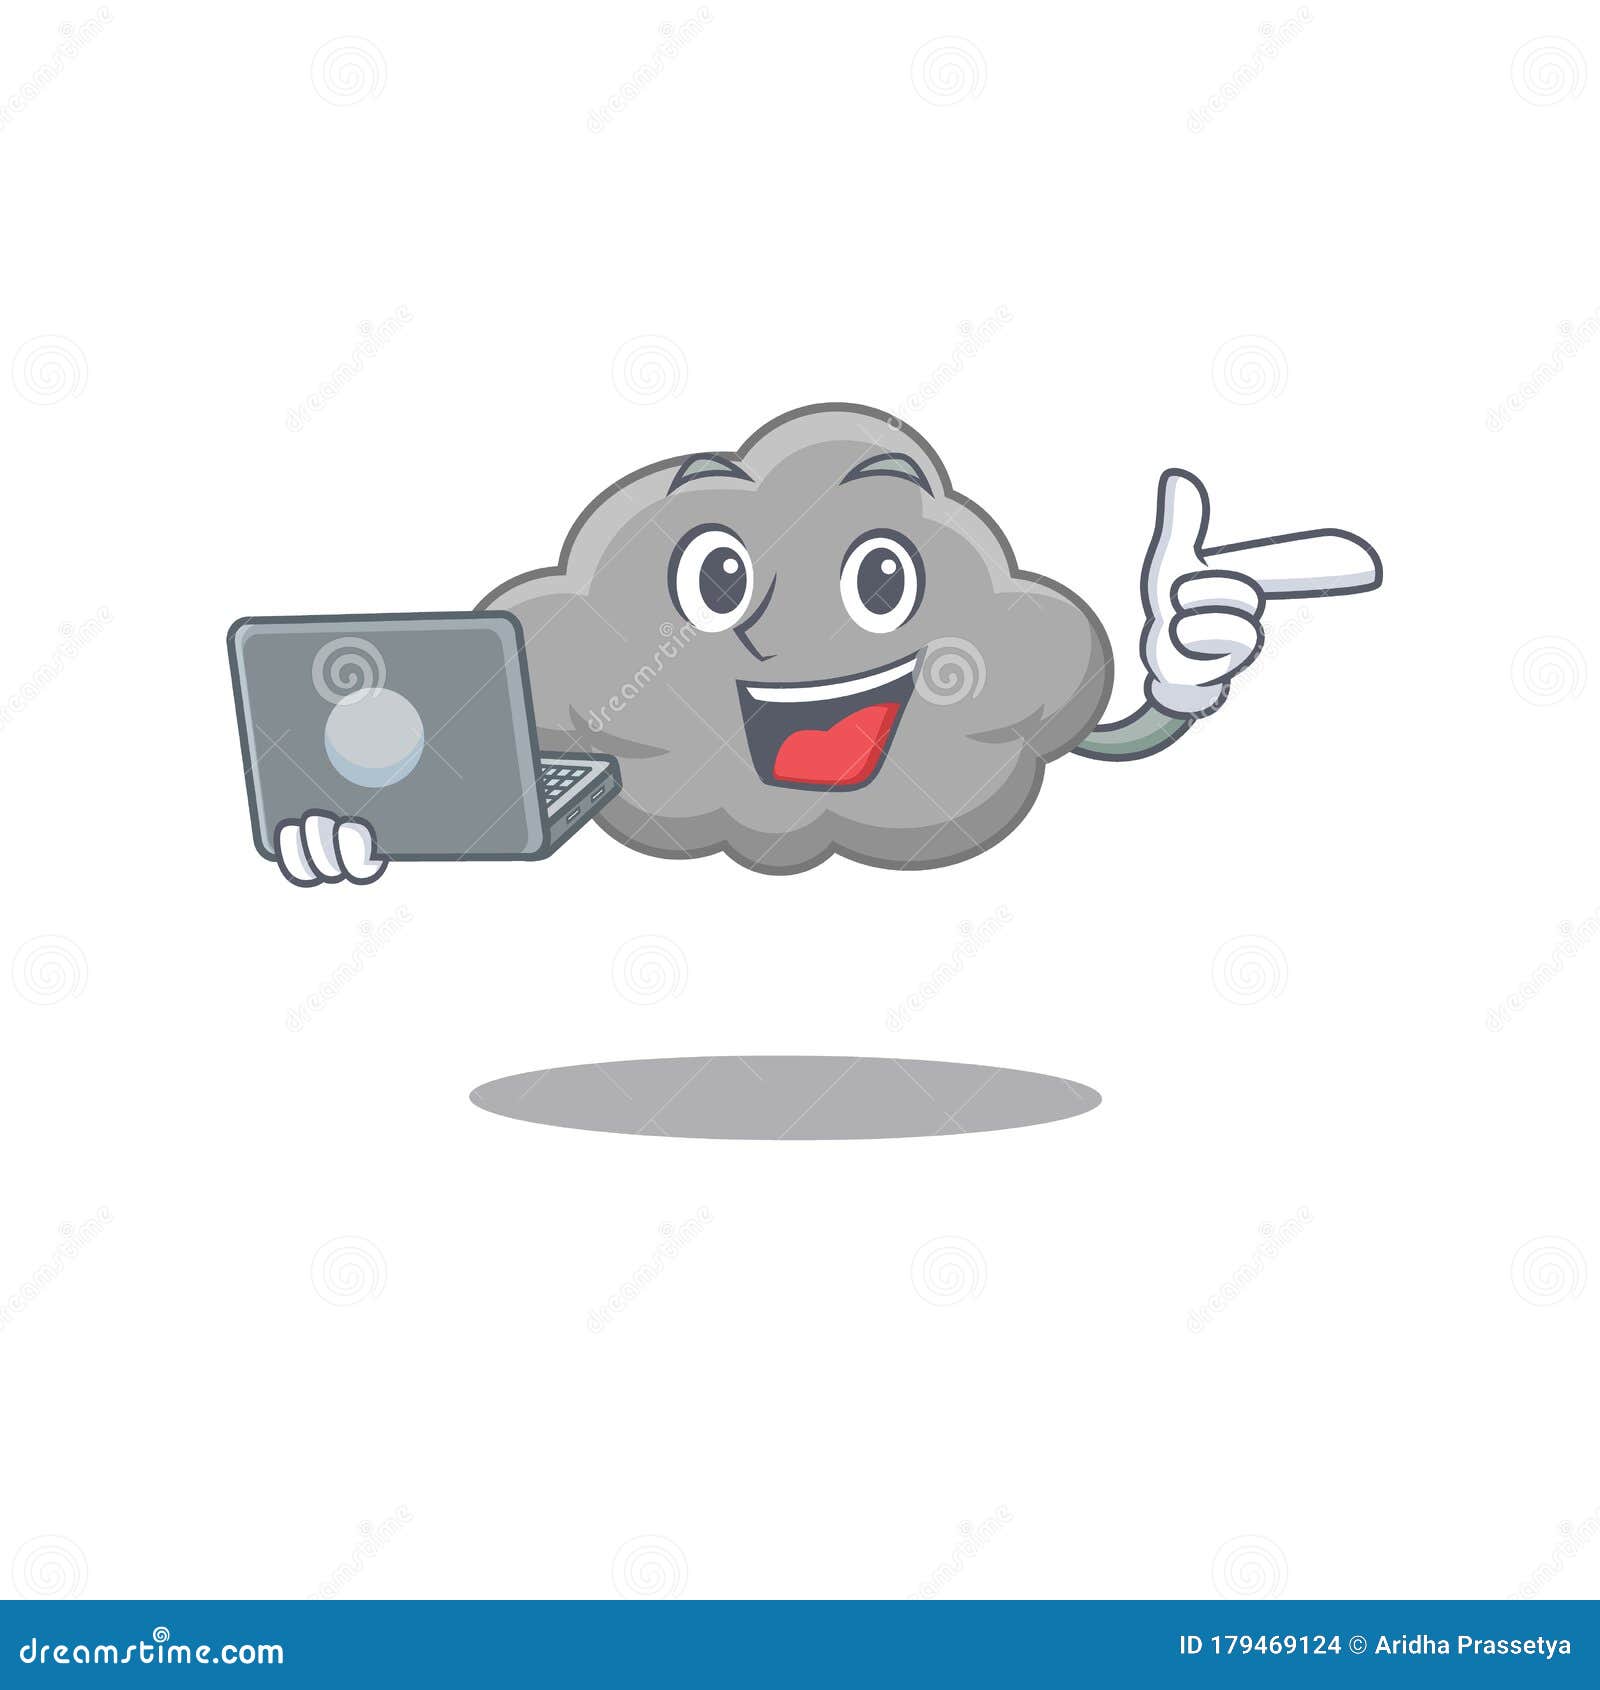 Jogos em nuvem. garota jogando jogos de laptop usando serviço de nuvem.  ilustração vetorial.